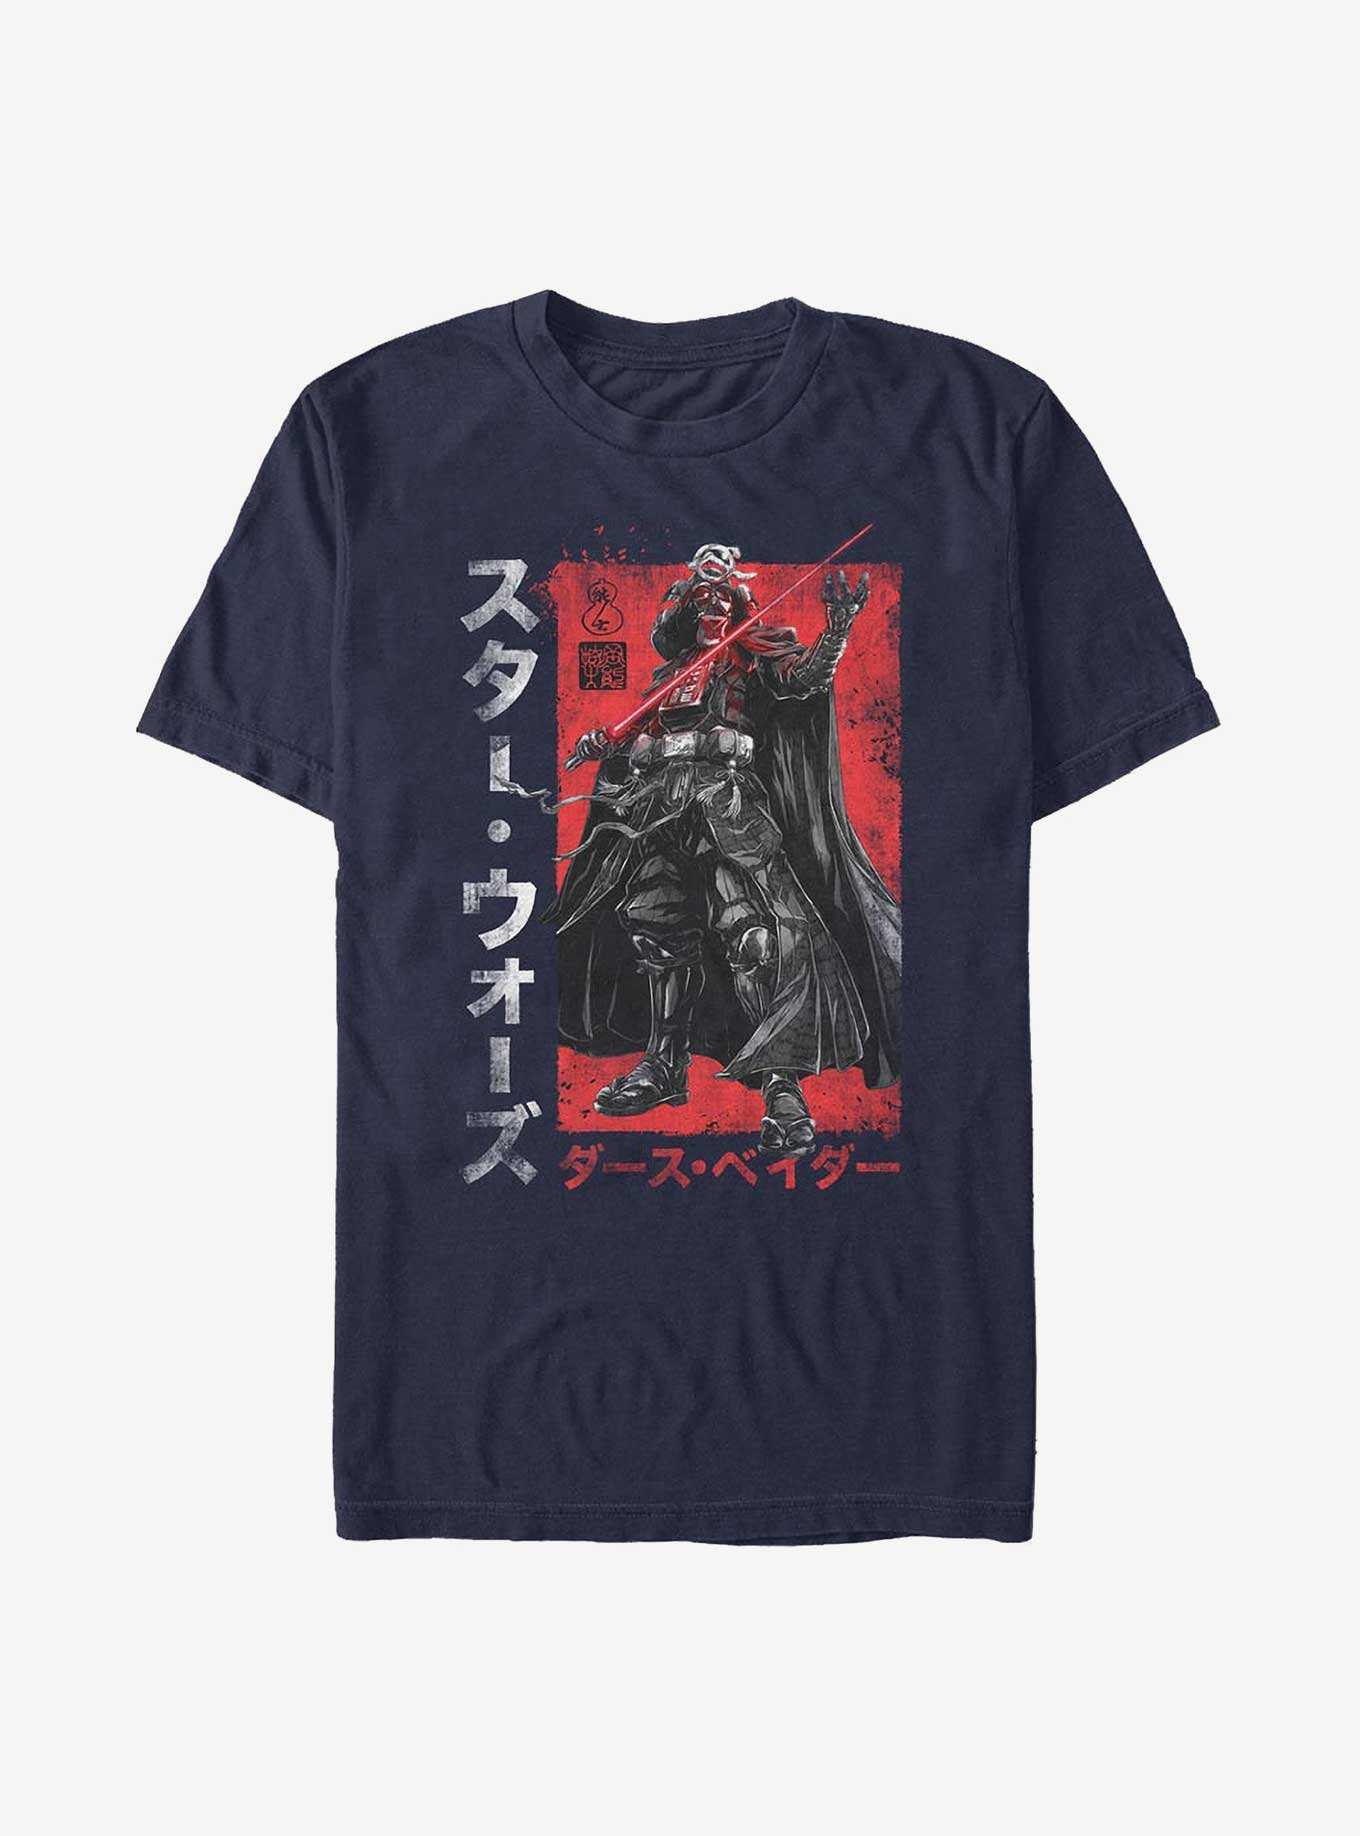 Star Wars: Visions Darth Vader Samurai T-Shirt, NAVY, hi-res